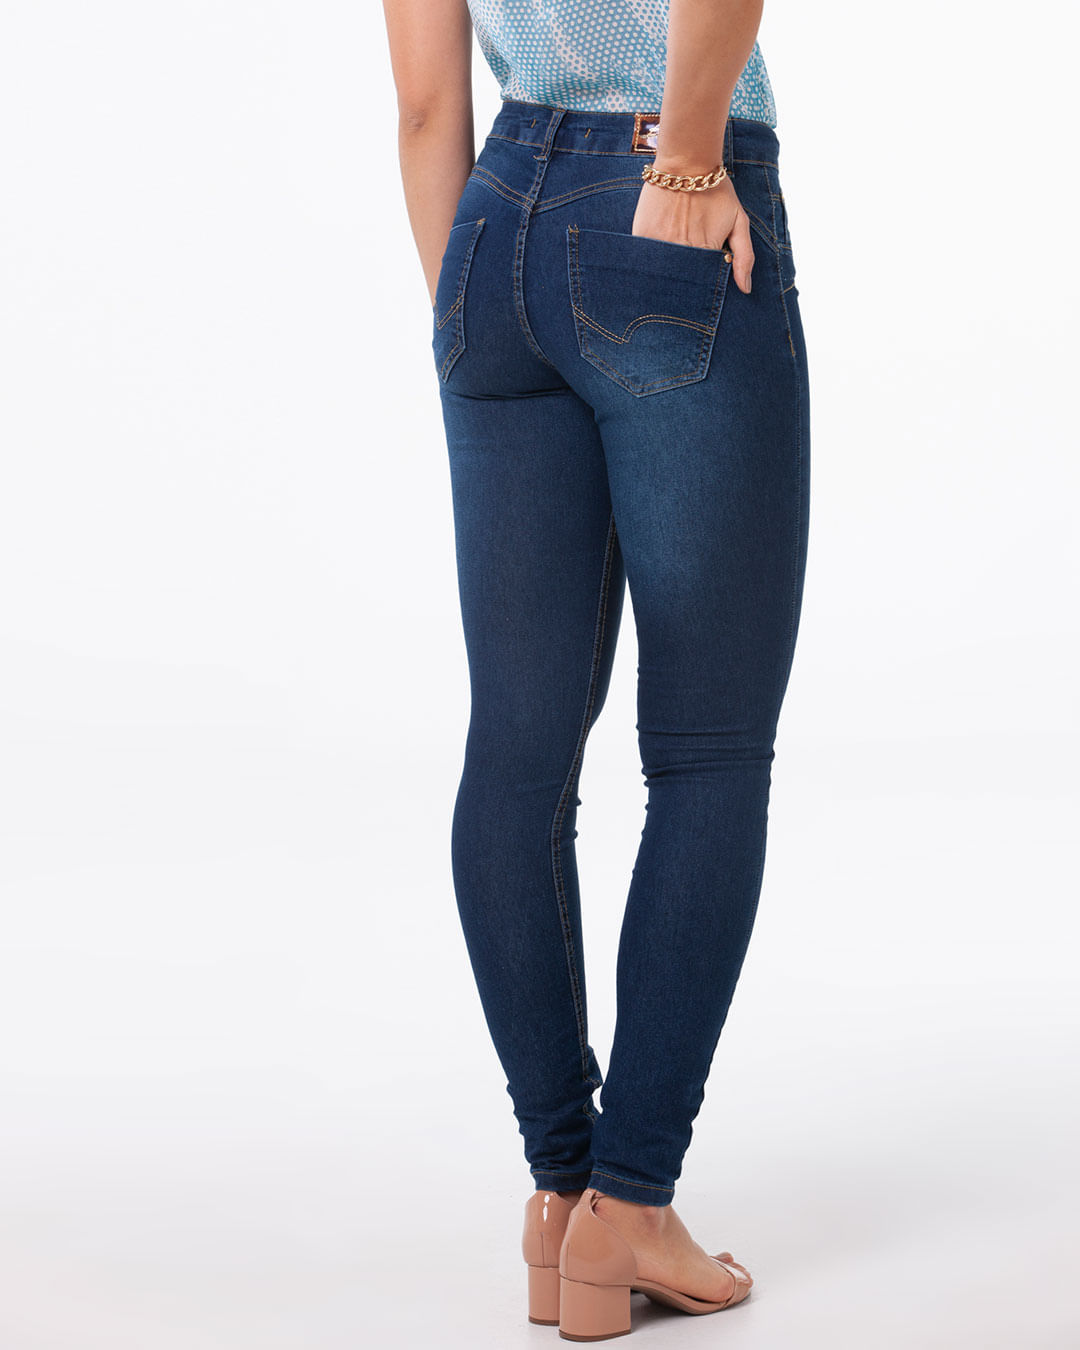 Calca-Jeans-Feminina-Skinny-Brilho-Biotipo-Azul